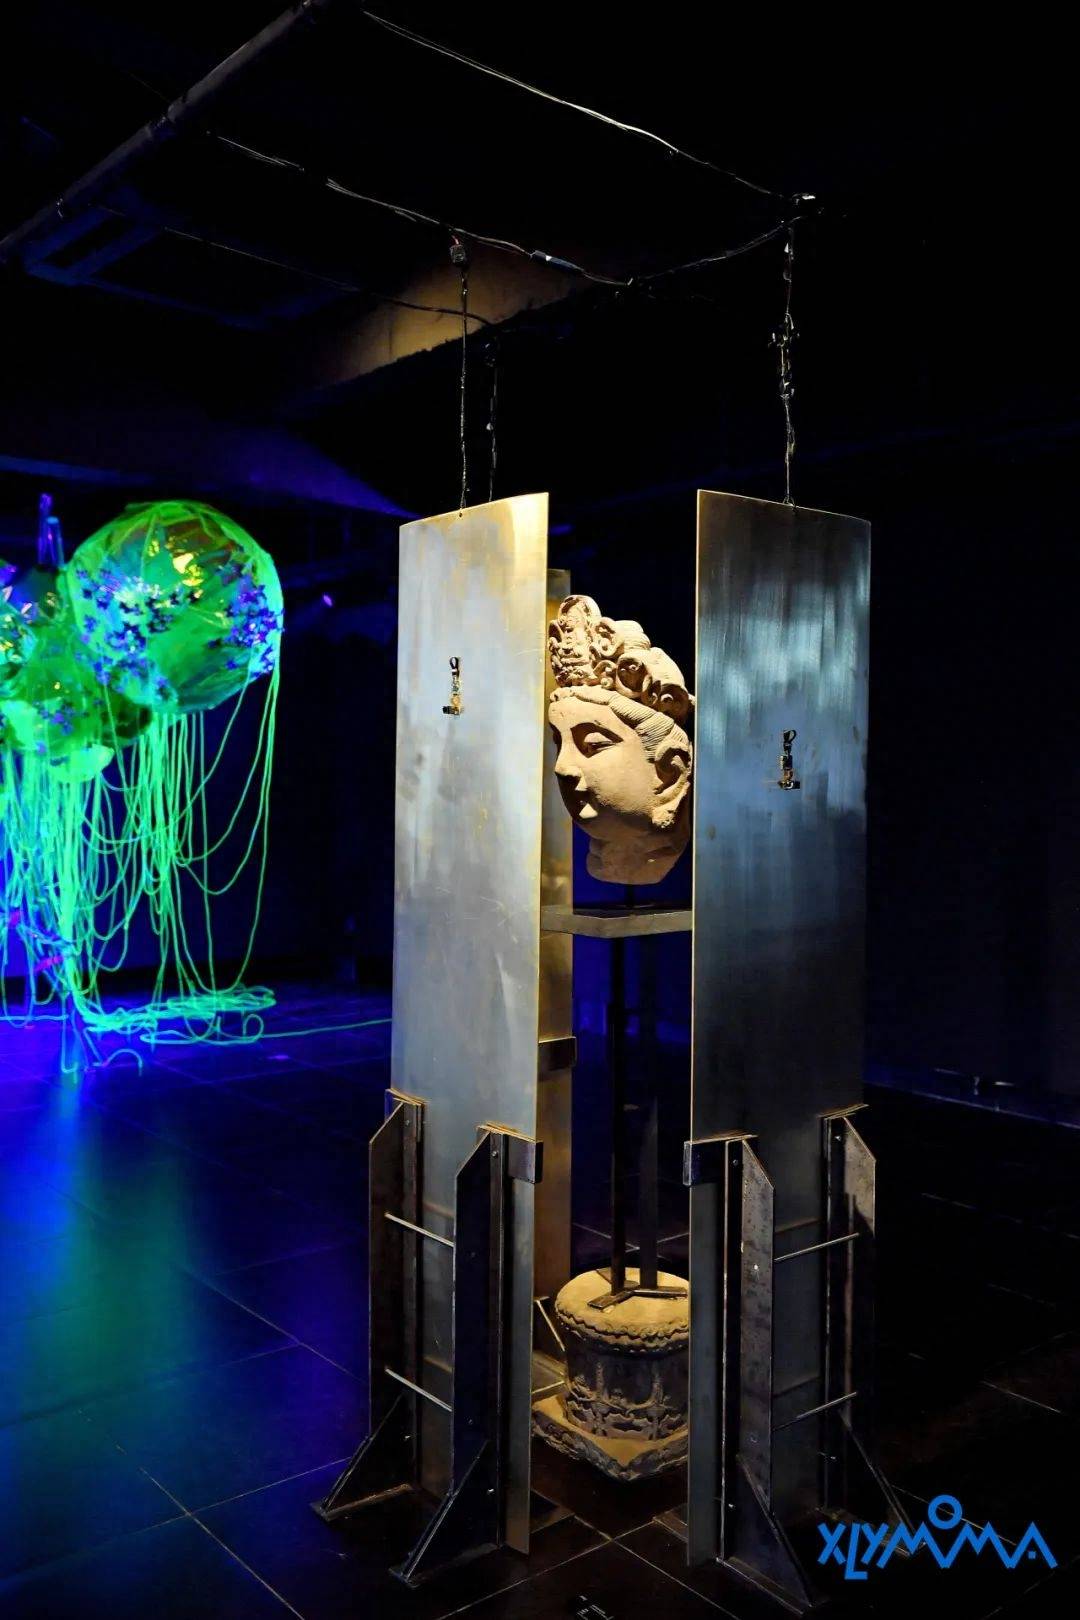 许燎源现代设计艺术博物馆第三届双年展：“物感星丛：反符号宰制”开幕